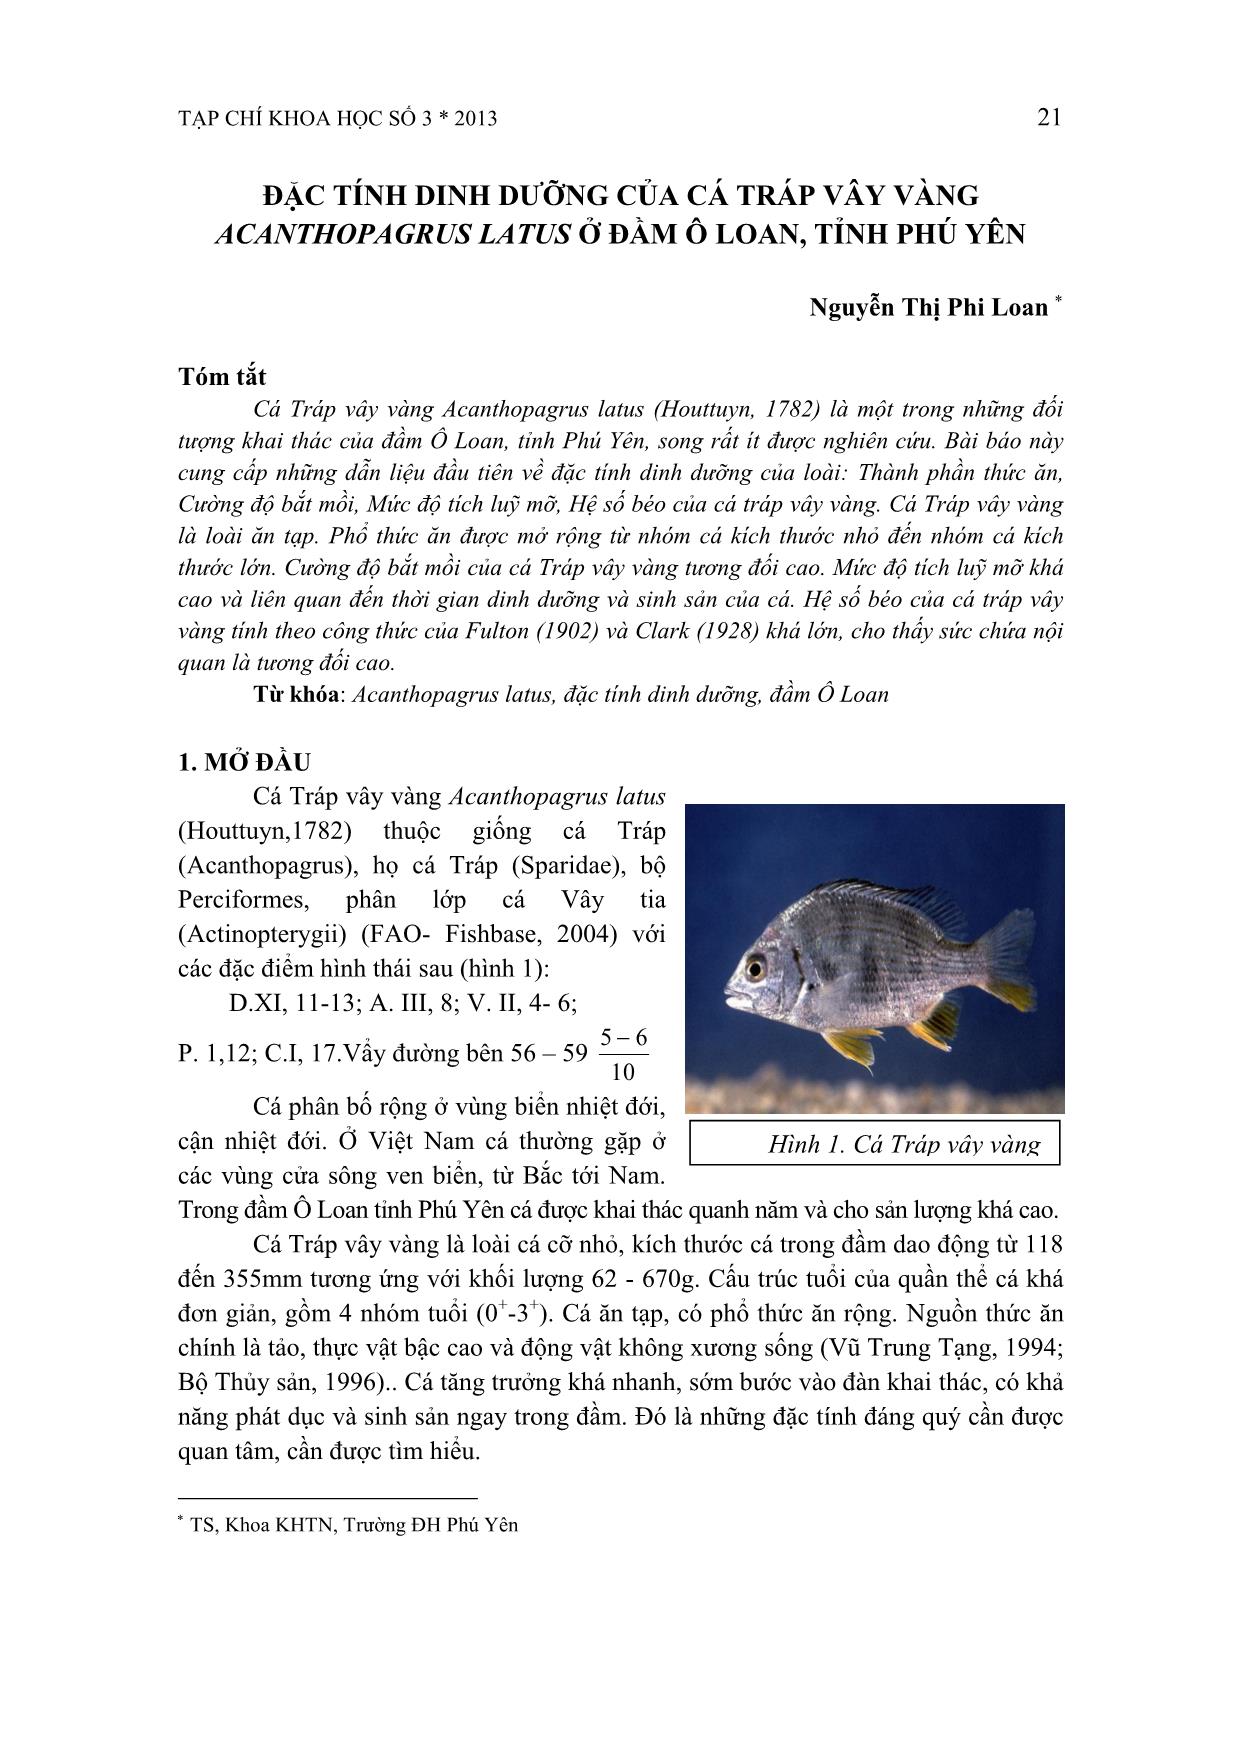 Đặc tính dinh dưỡng của cá tráp vây vàng Acanthopagrus latus ở đầm Ô Loan, tỉnh Phú Yên trang 1